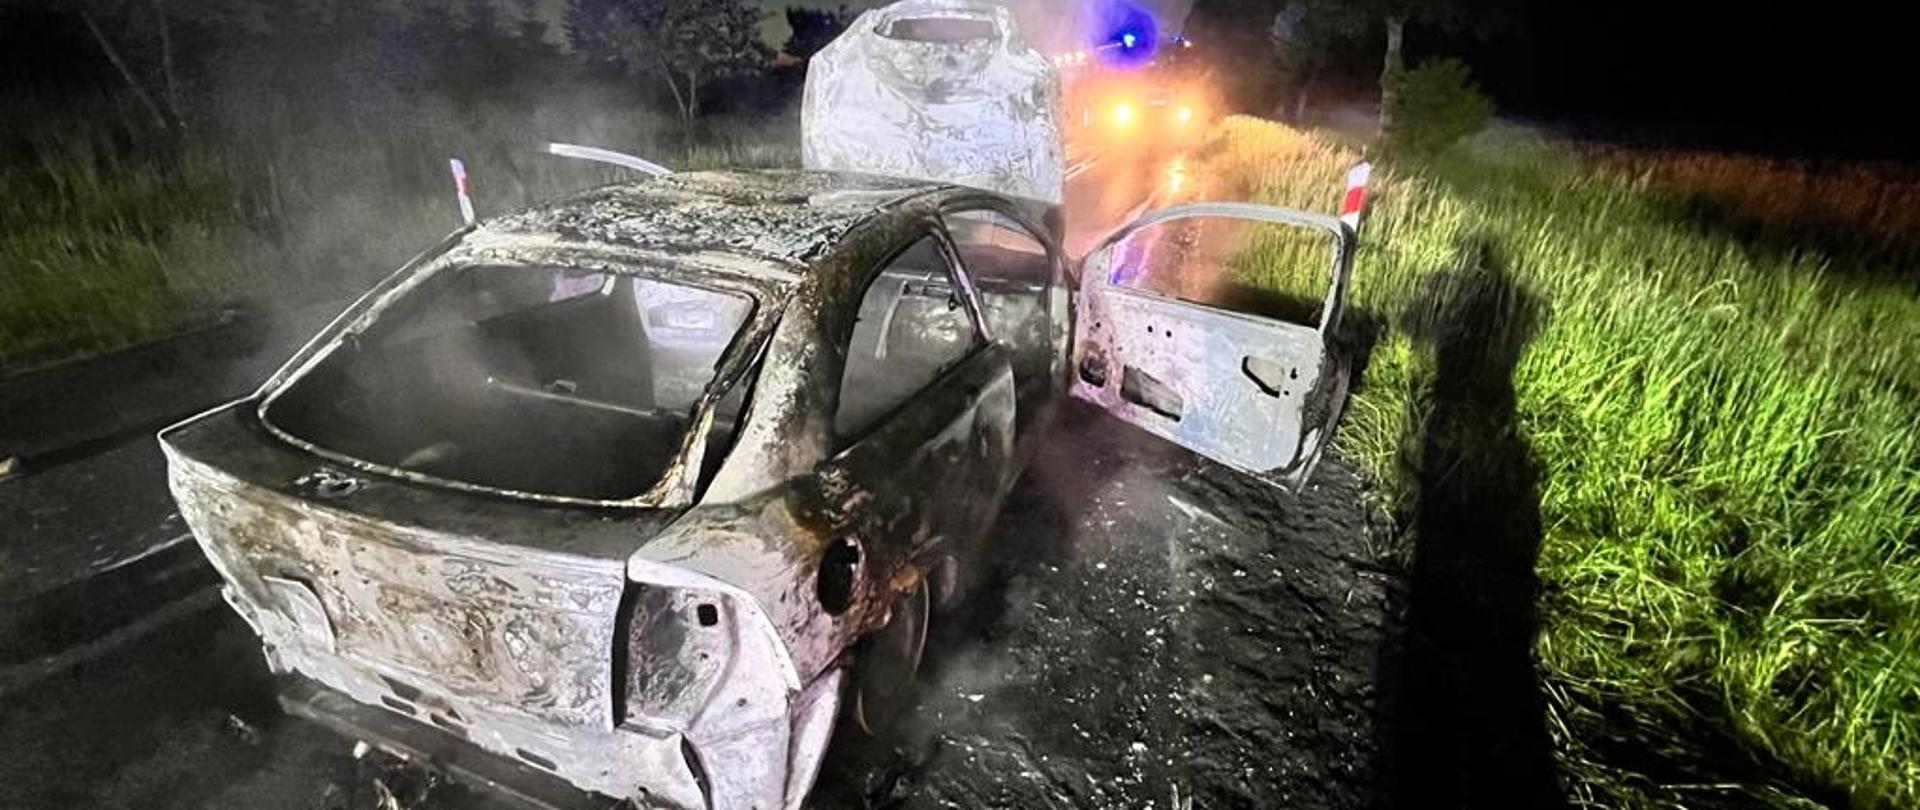 Zdjęcie przedstawia spalony wrak samochodu osobowego na poboczu drogi. 